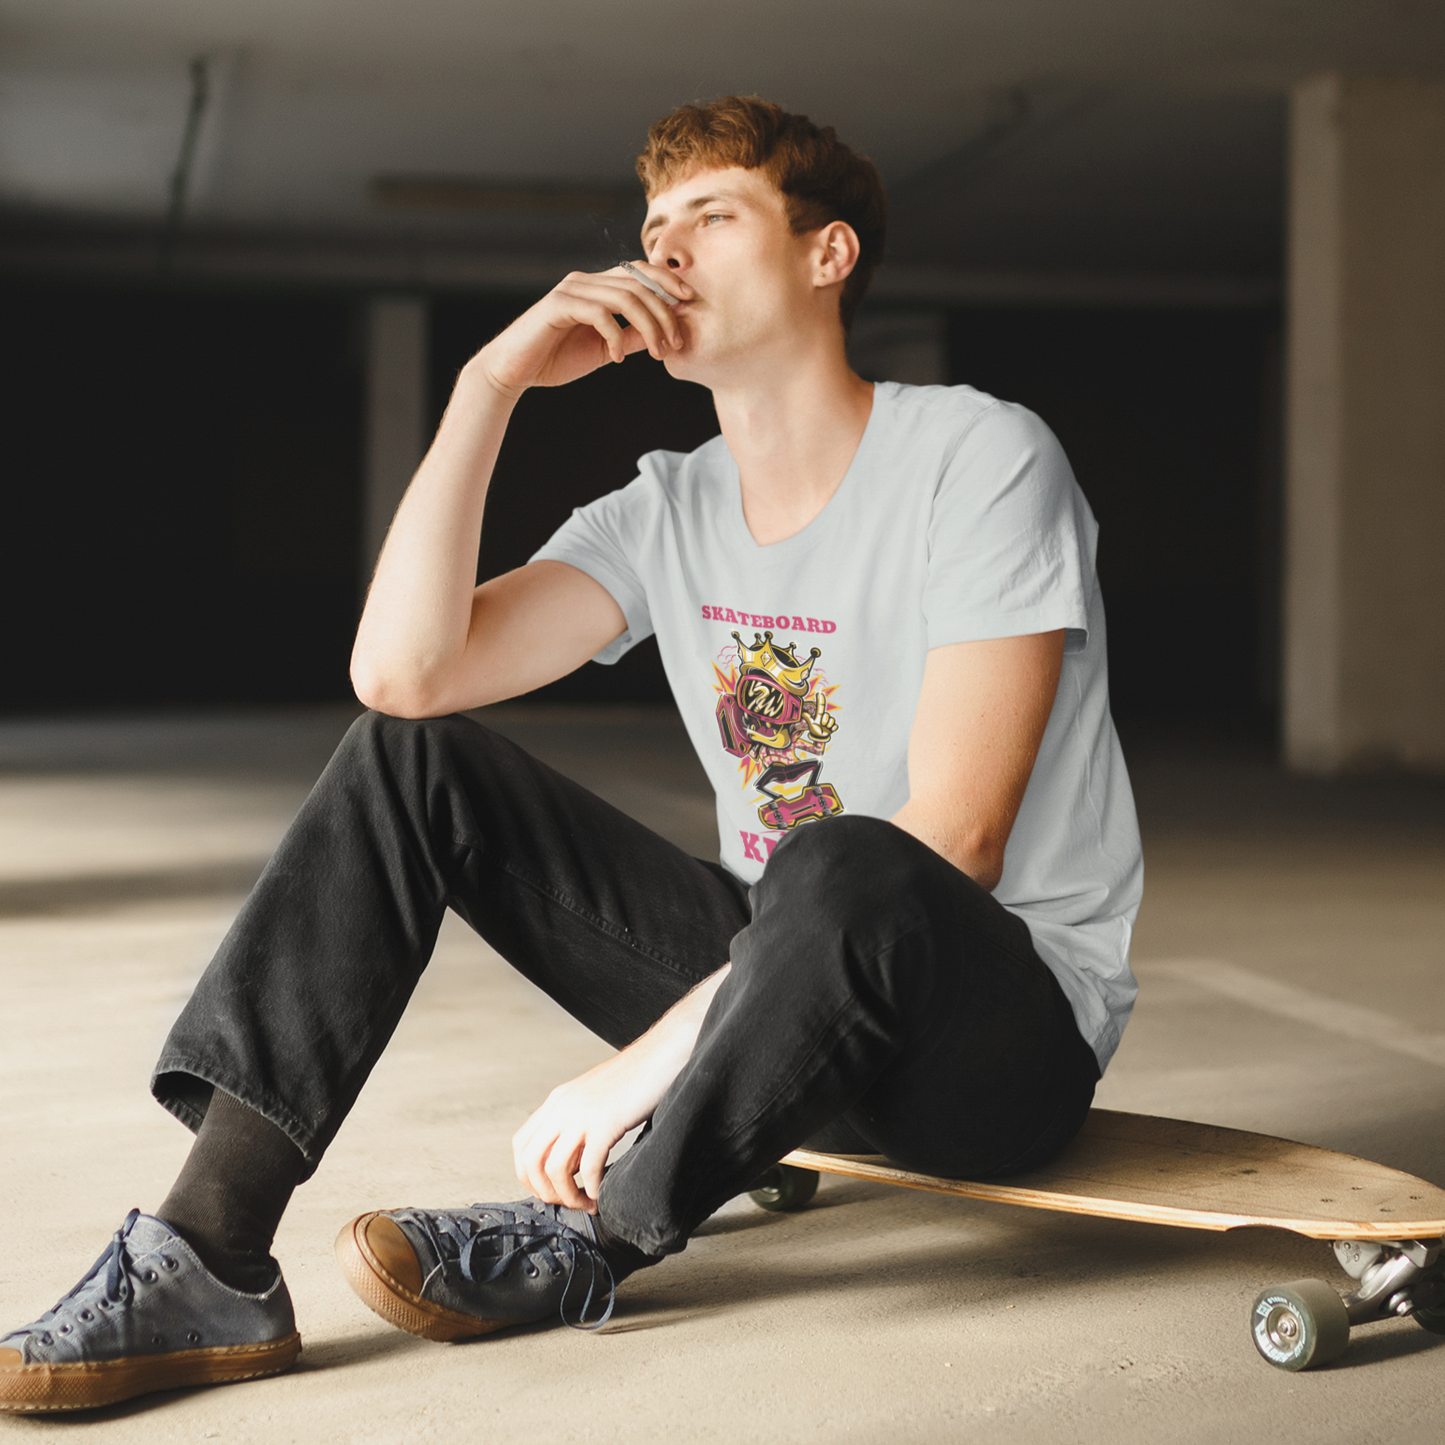 Skateboard King T-Shirt